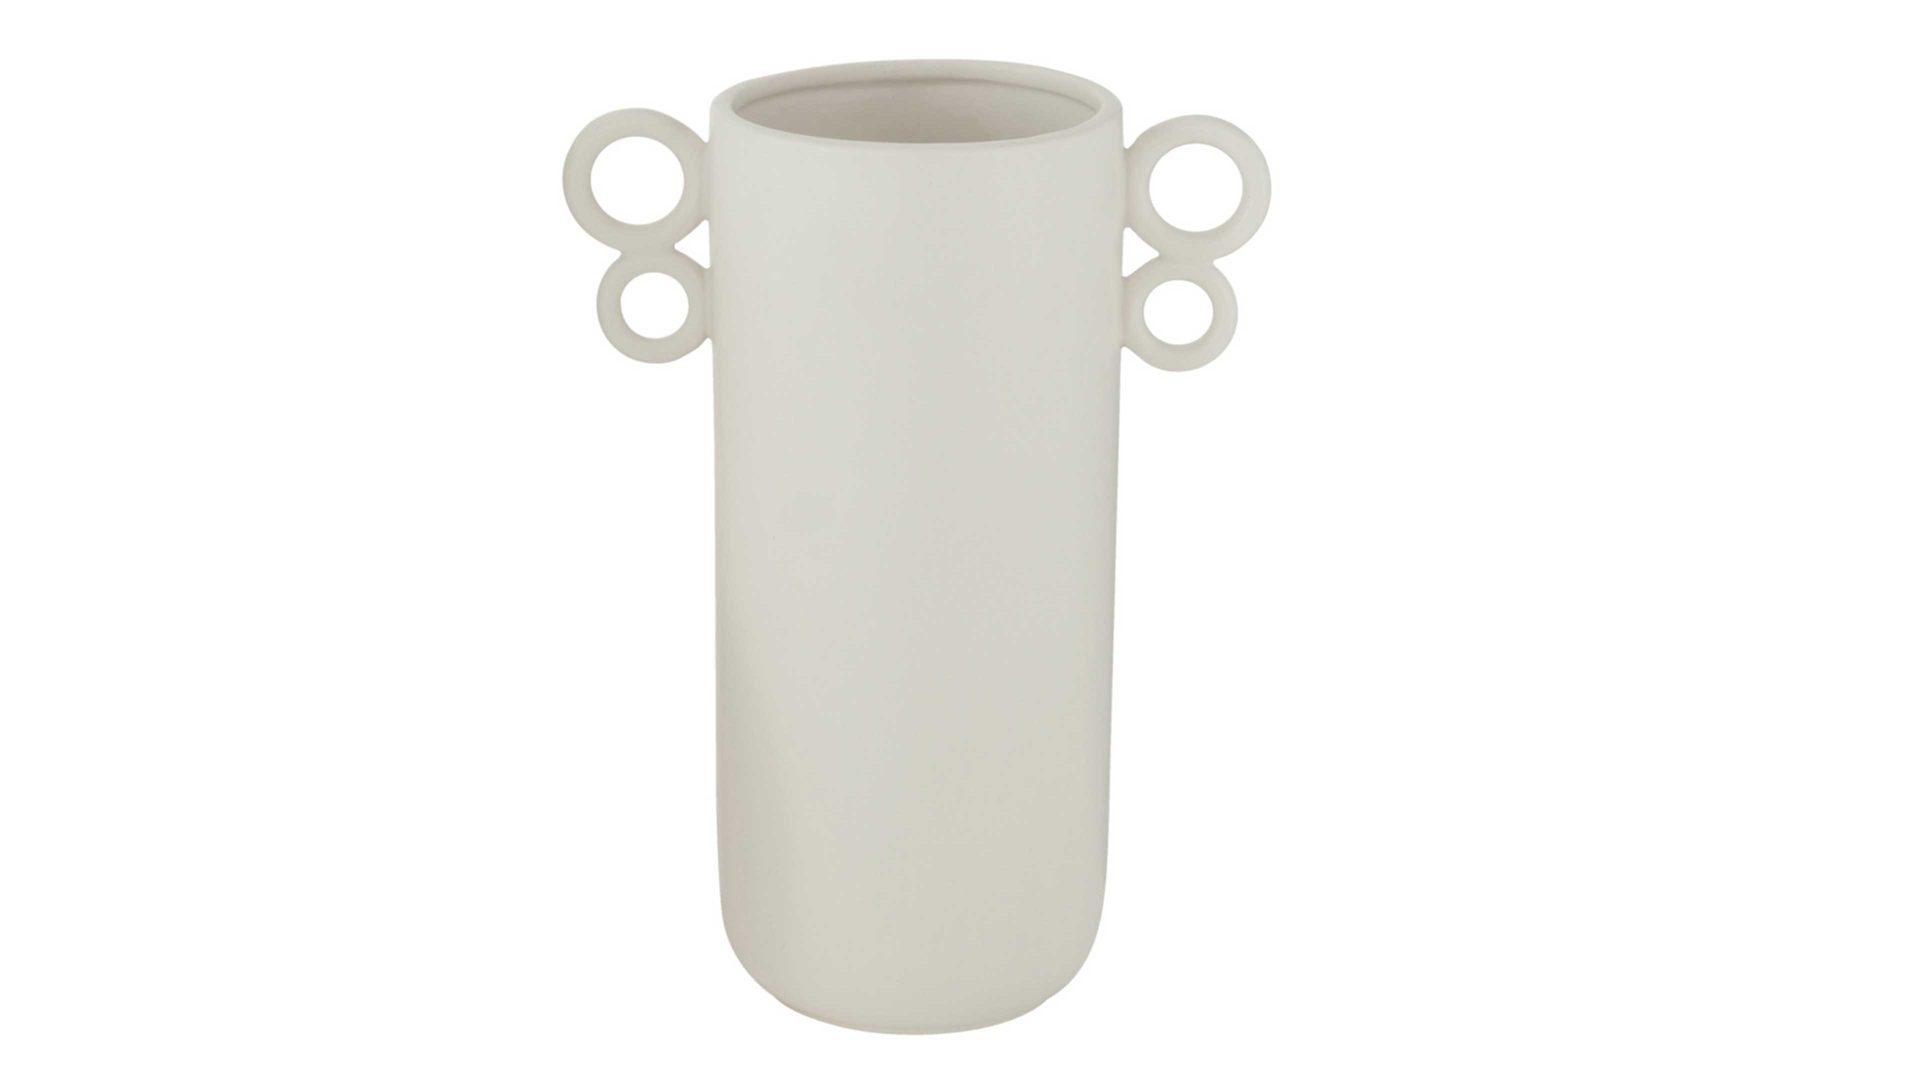 Vase Interliving BEST BUDDYS! aus Keramik in Weiß Interliving BEST BUDDYS! Vase Shonda mattweißes Steingut - Durchmesser ca. 14 cm